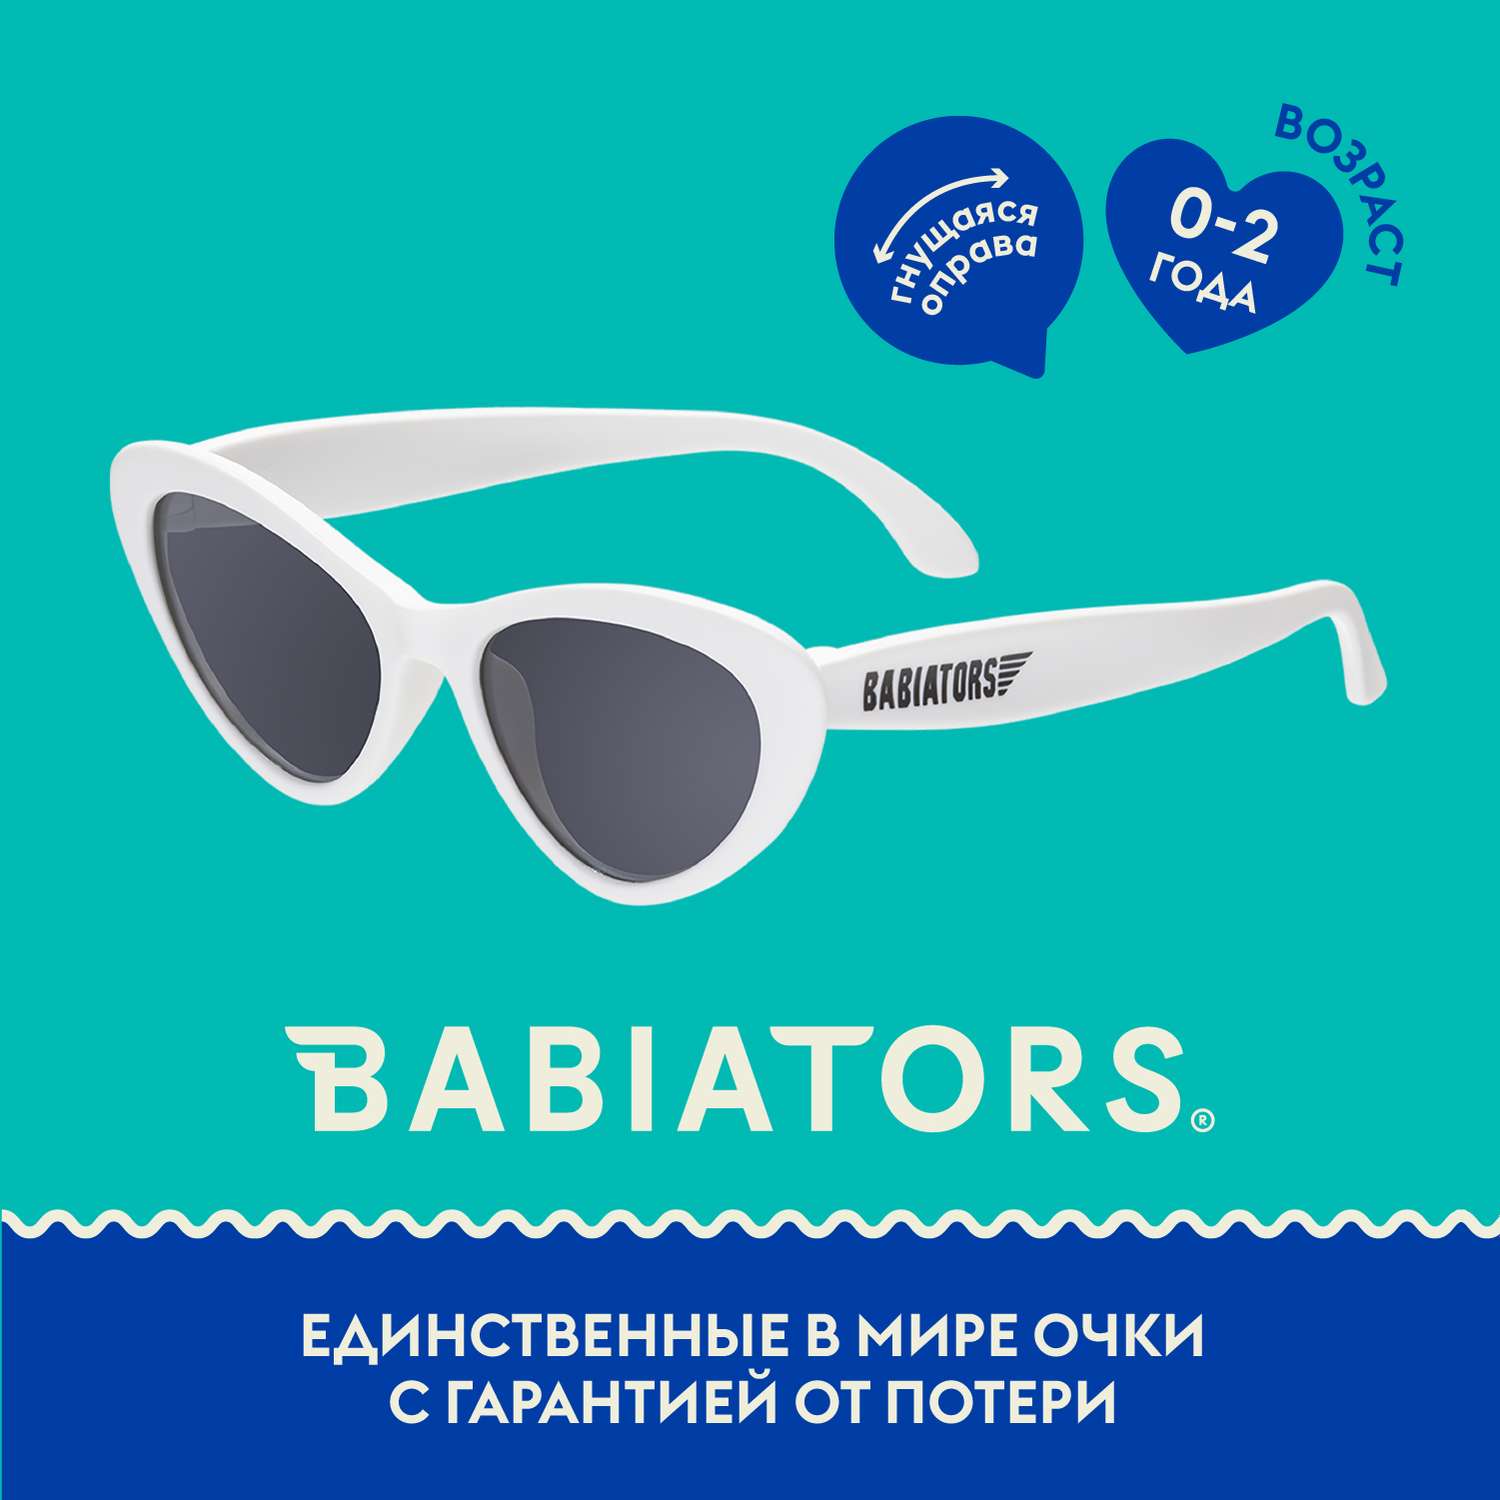 Солнцезащитные очки Babiators Original Cat-Eye Шаловливый белый 0-2 CAT-001 - фото 1